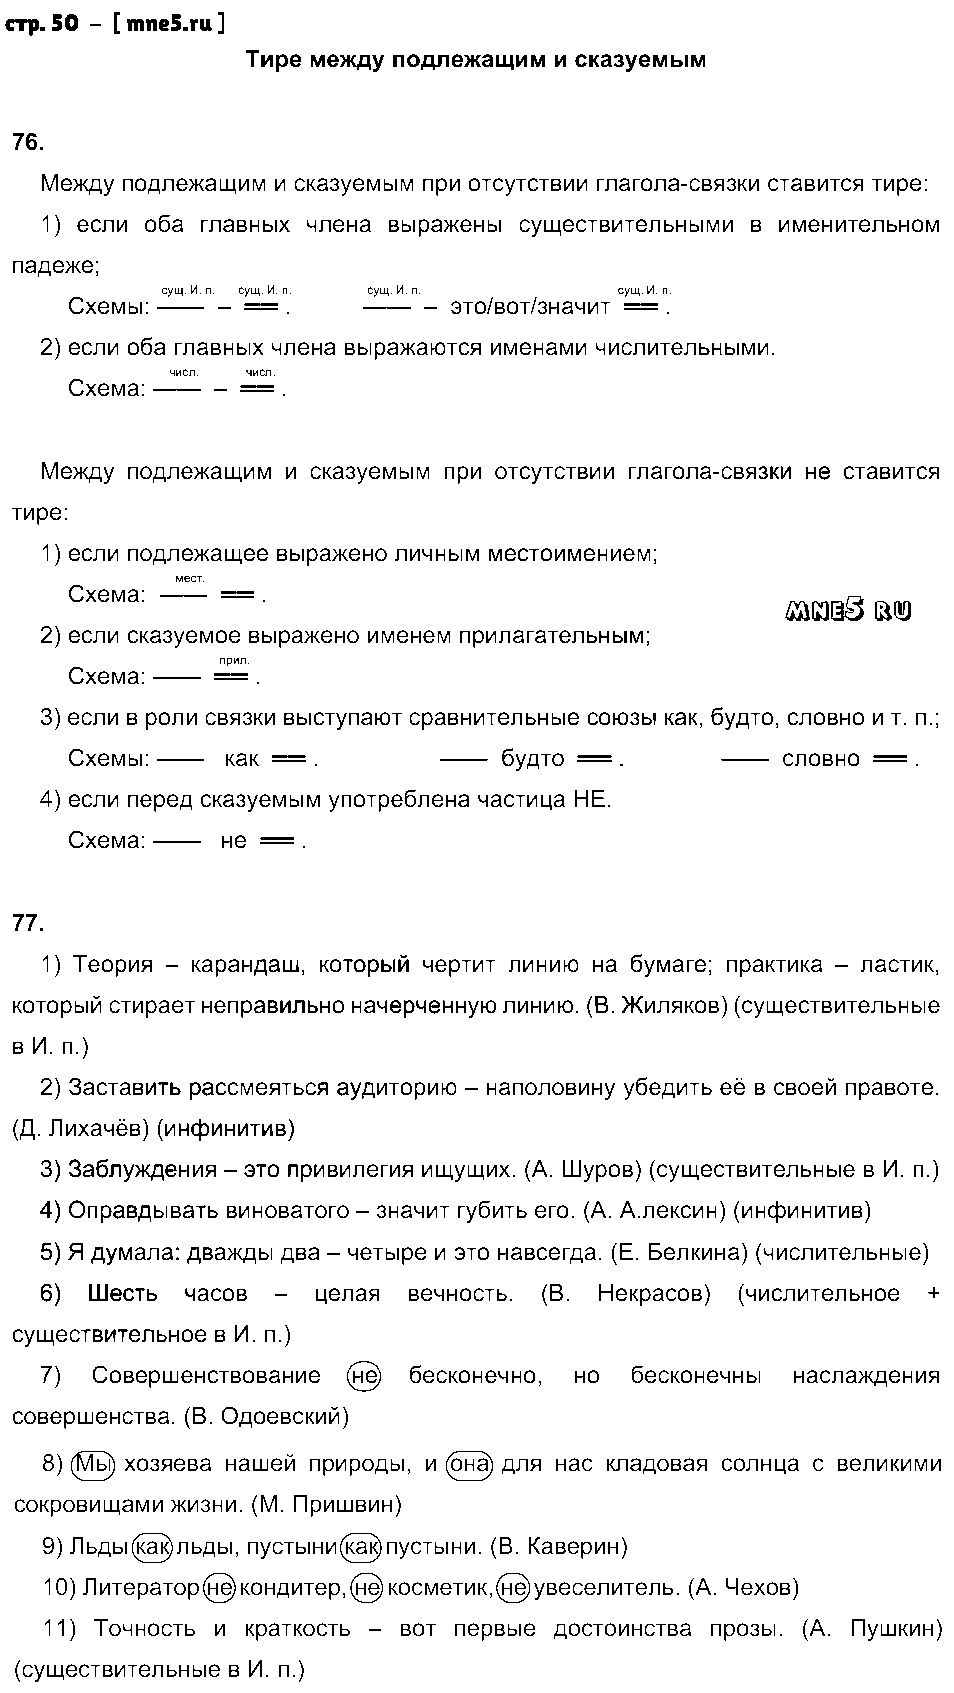 ГДЗ Русский язык 8 класс - стр. 50